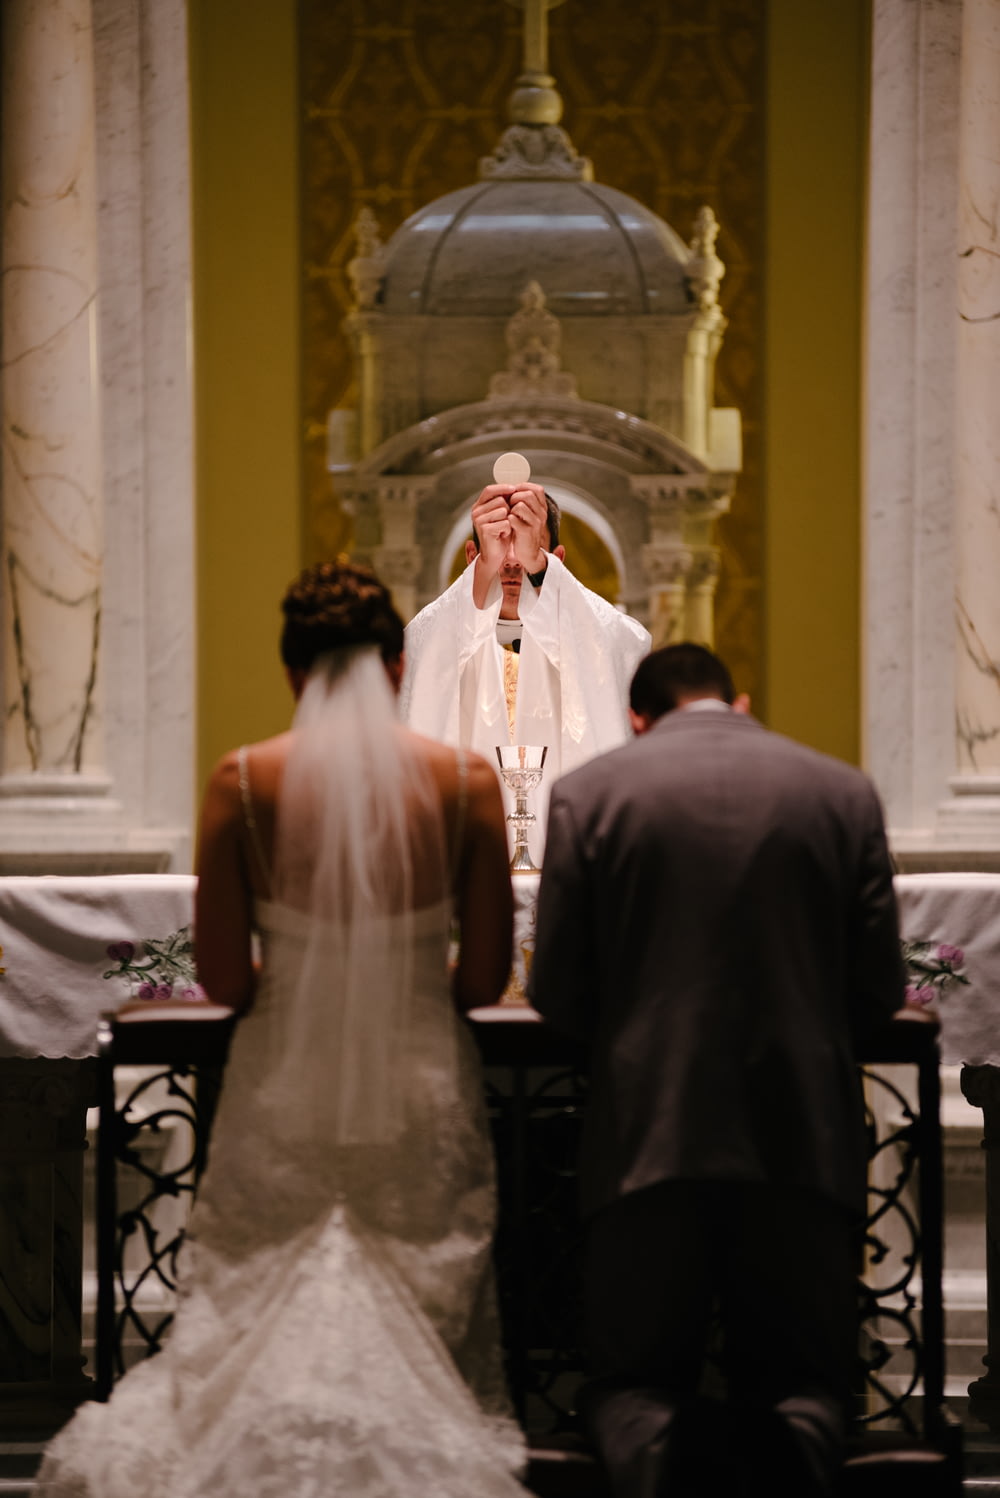 聖餐式を行う司祭の前でひざまずく花婿と花嫁